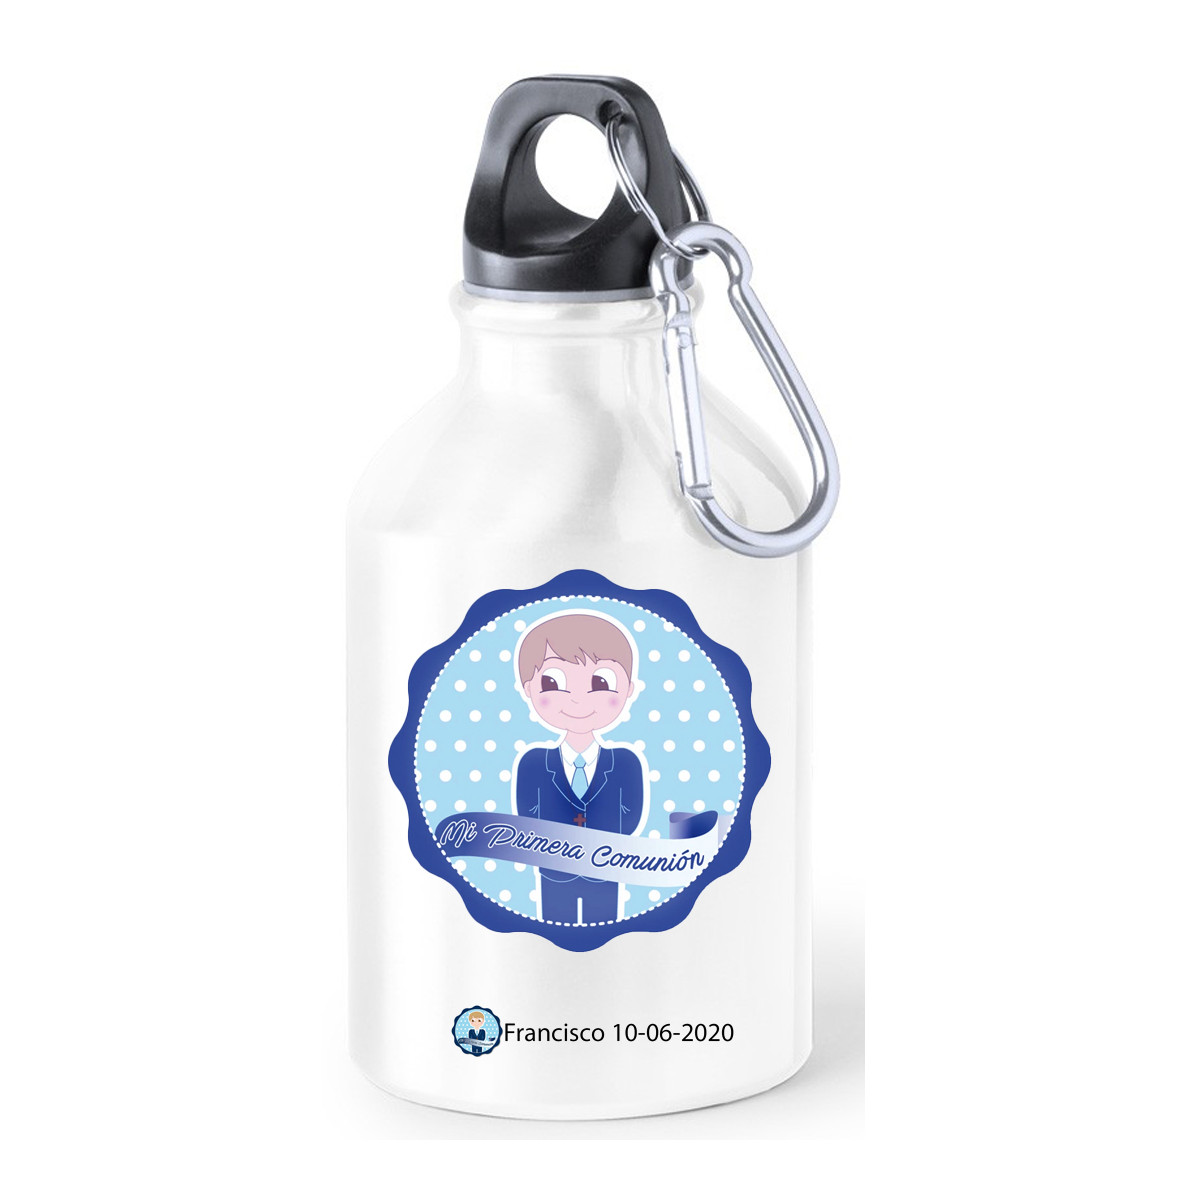 Botellas comunión para agua metálica con adhesivo decorativo para comunión de niño